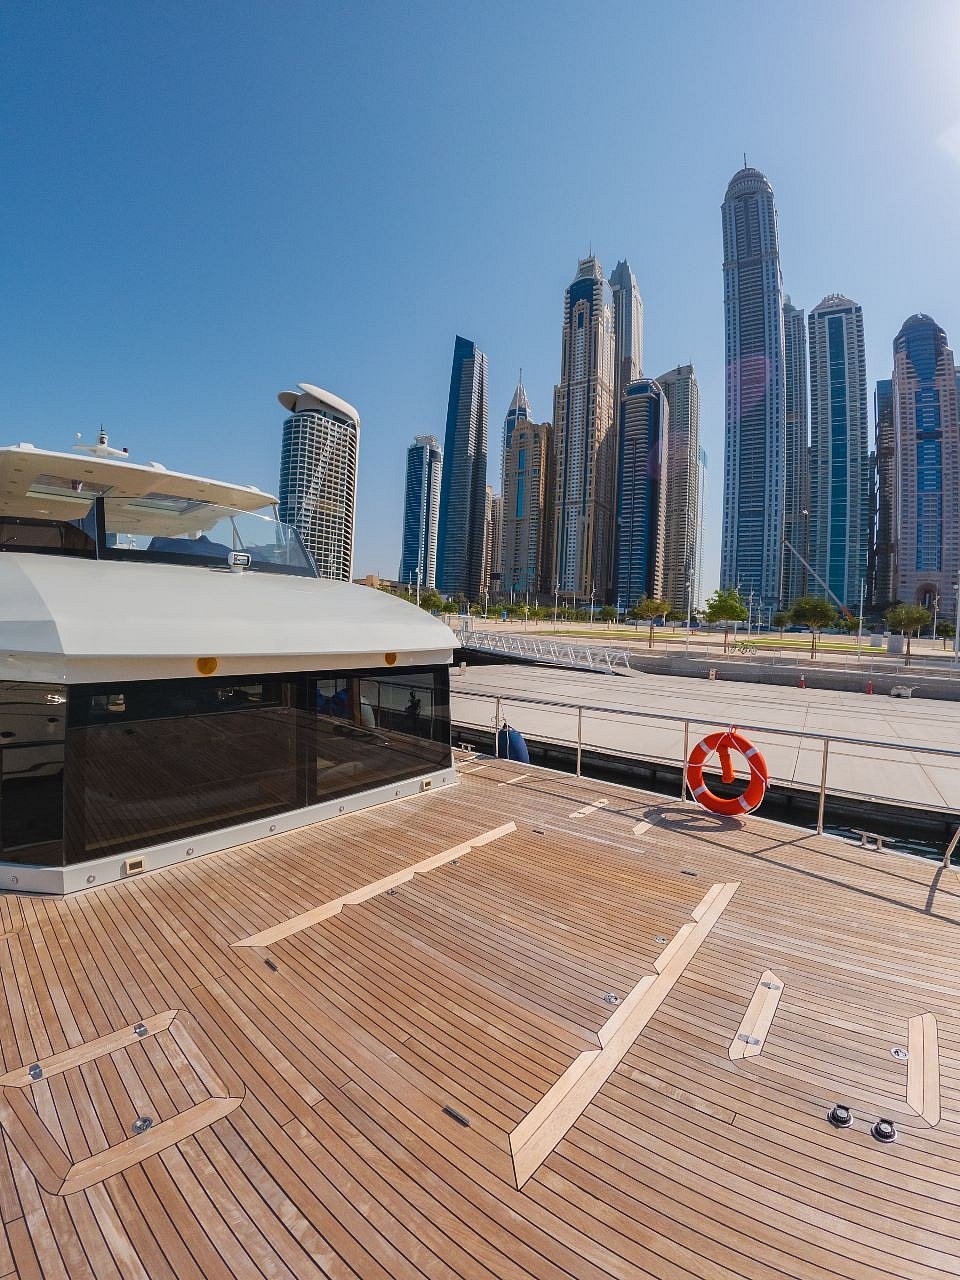 在迪拜 租 Explora 60 英尺 (2022) 在Dubai Harbour 11